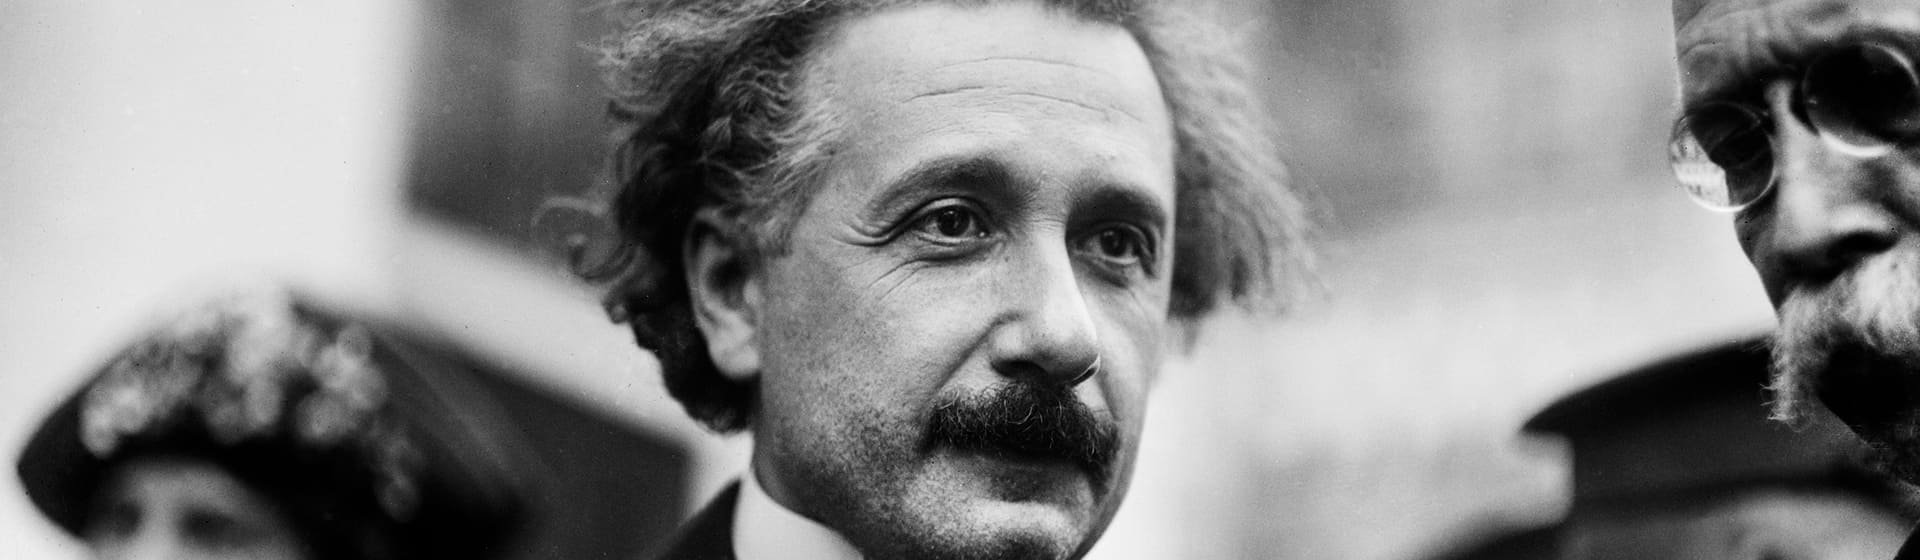 Альберт Эйнштейн - Мерч и одежда с атрибутикой